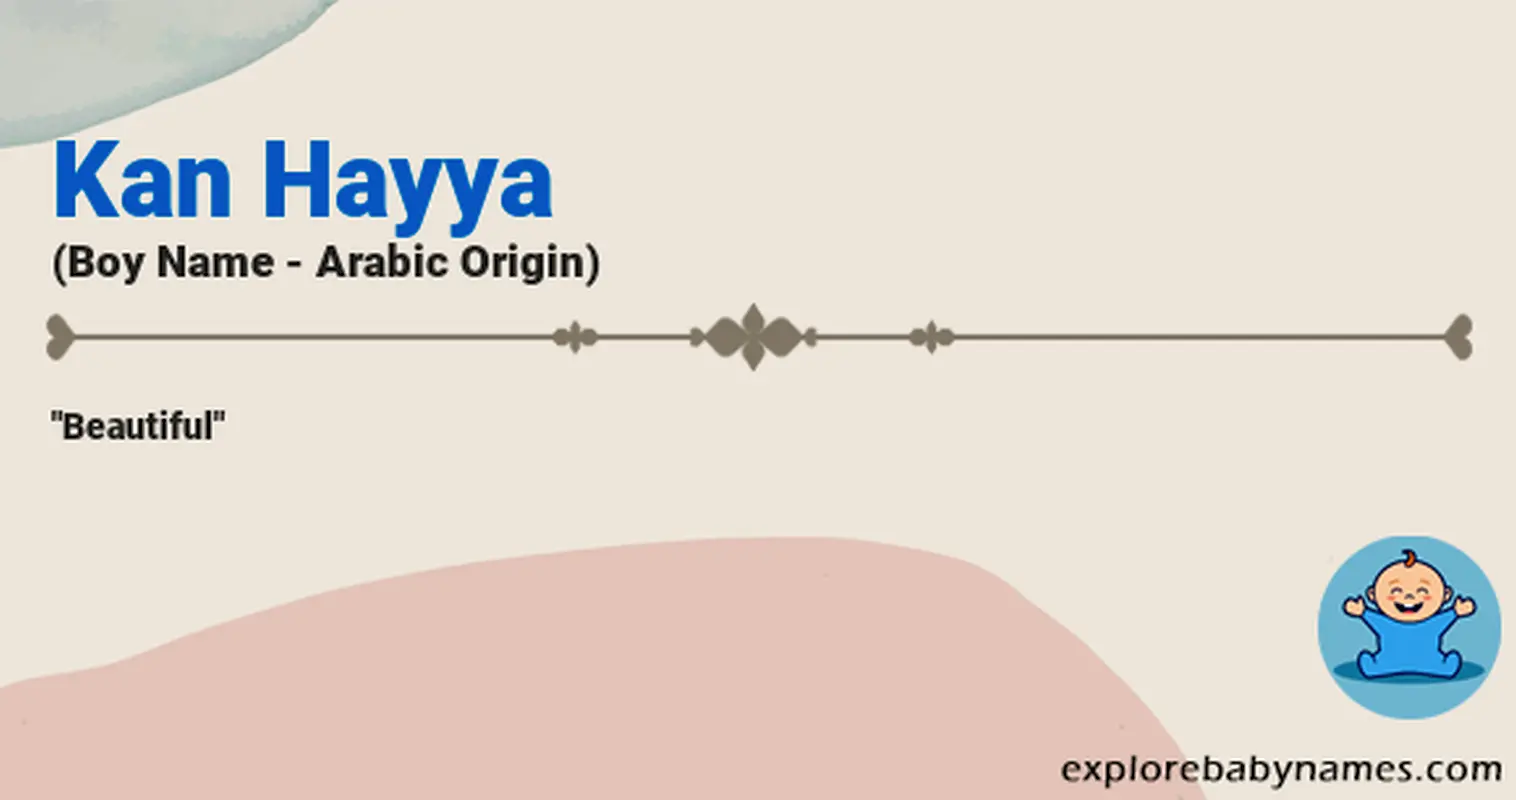 Meaning of Kan Hayya